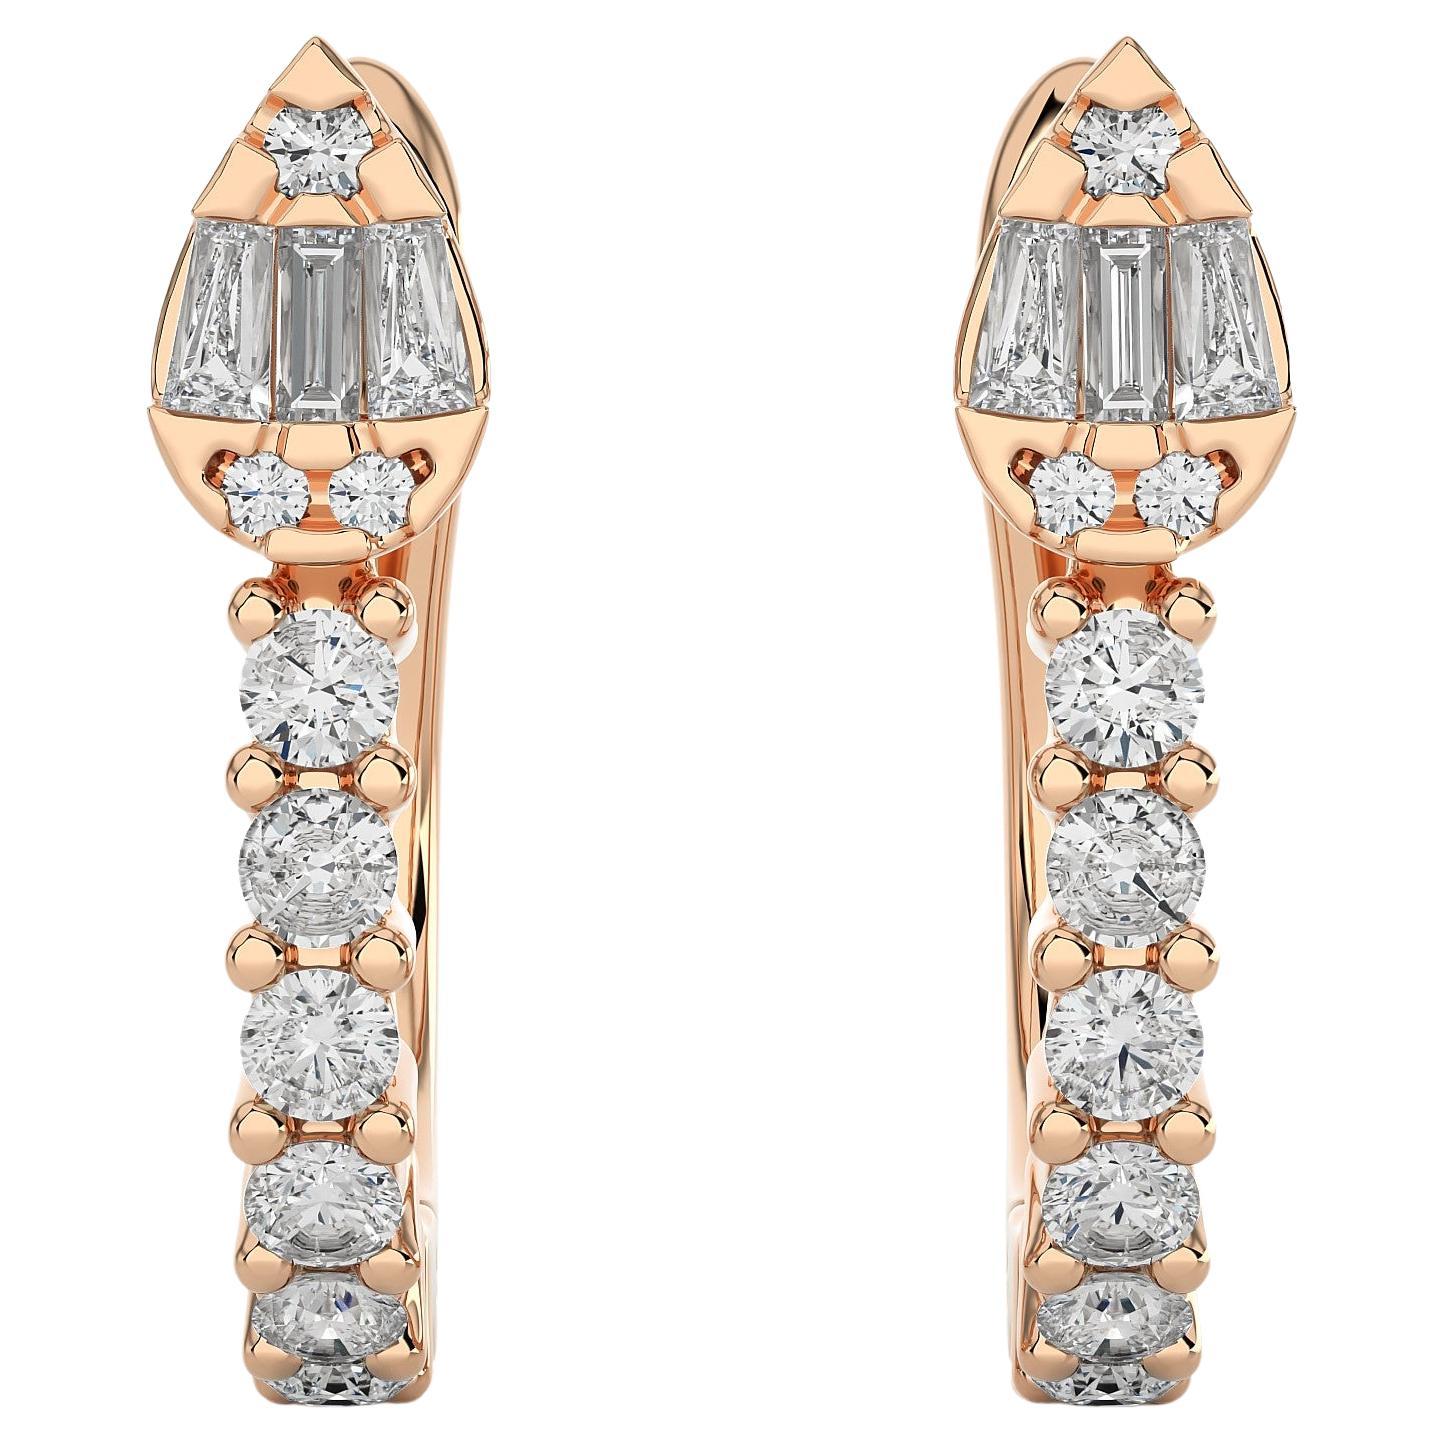 Boucles d'oreilles Huggie en or 14KR et diamants modernes (0,30 carat).